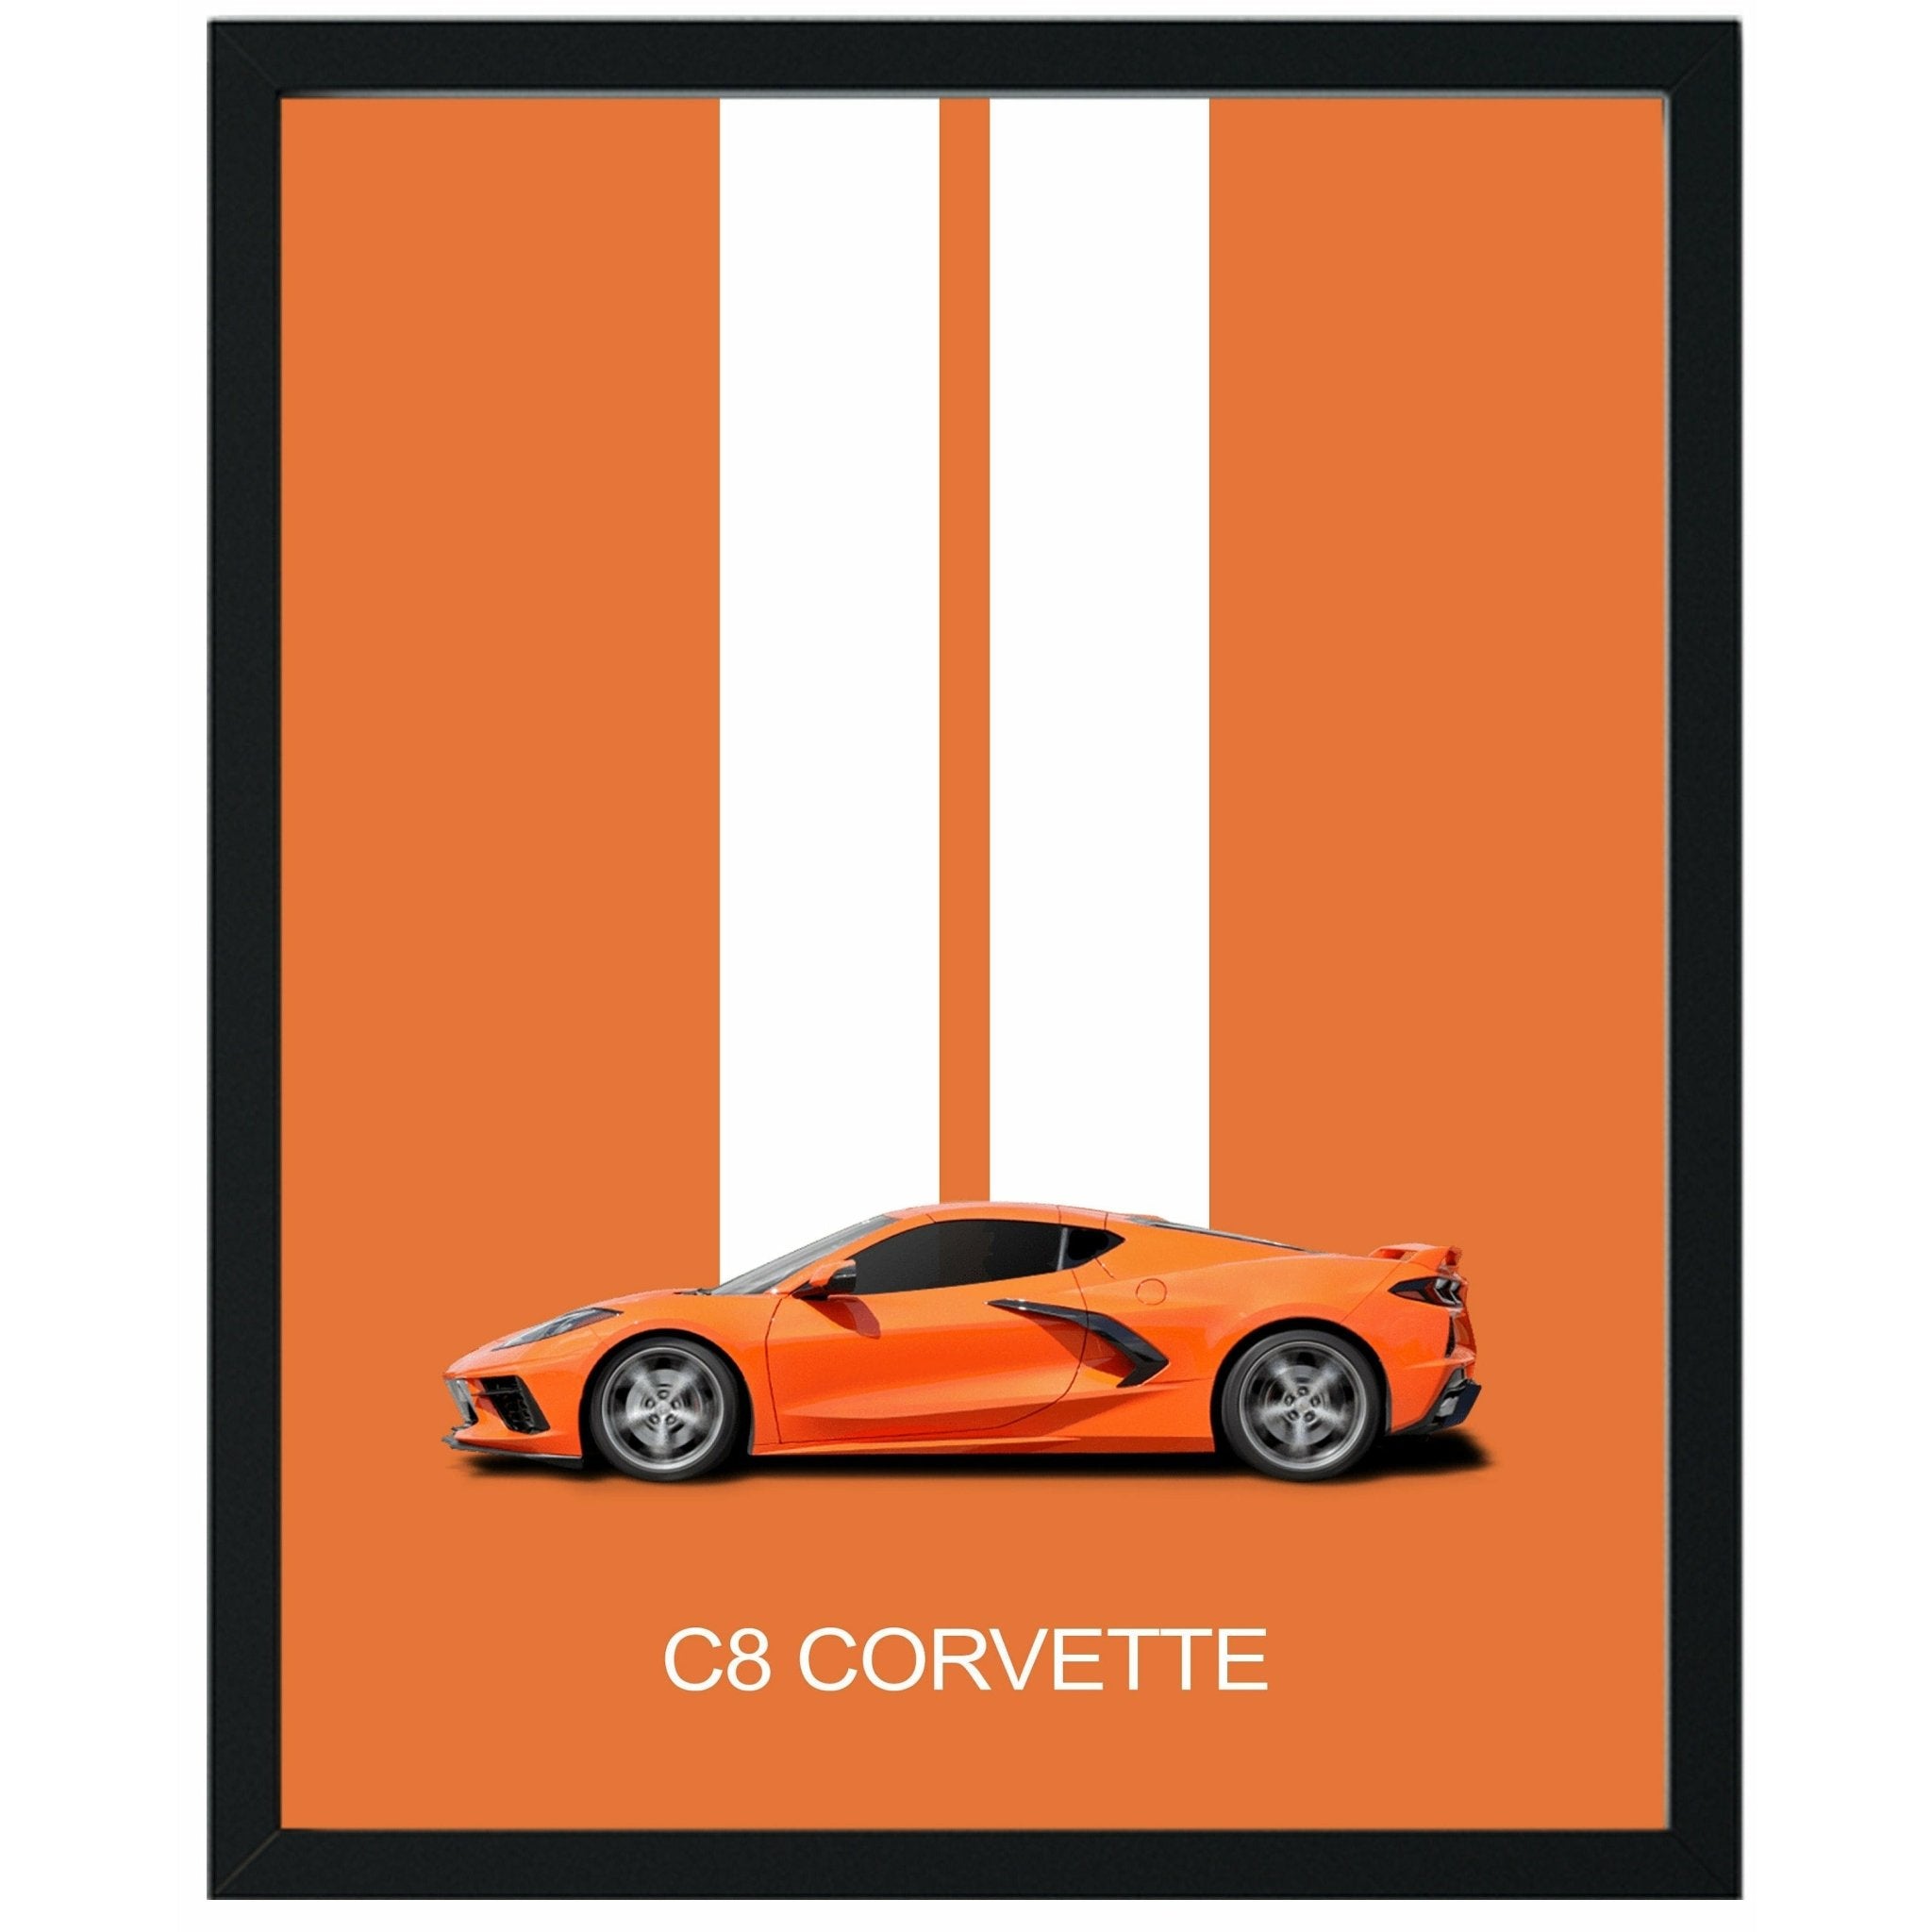 Corvette C8 Poster Print - Unframed | Corvette Wall Art | Great Gift for Dad or Corvette Enthusiast - Vette1 - Wall Art